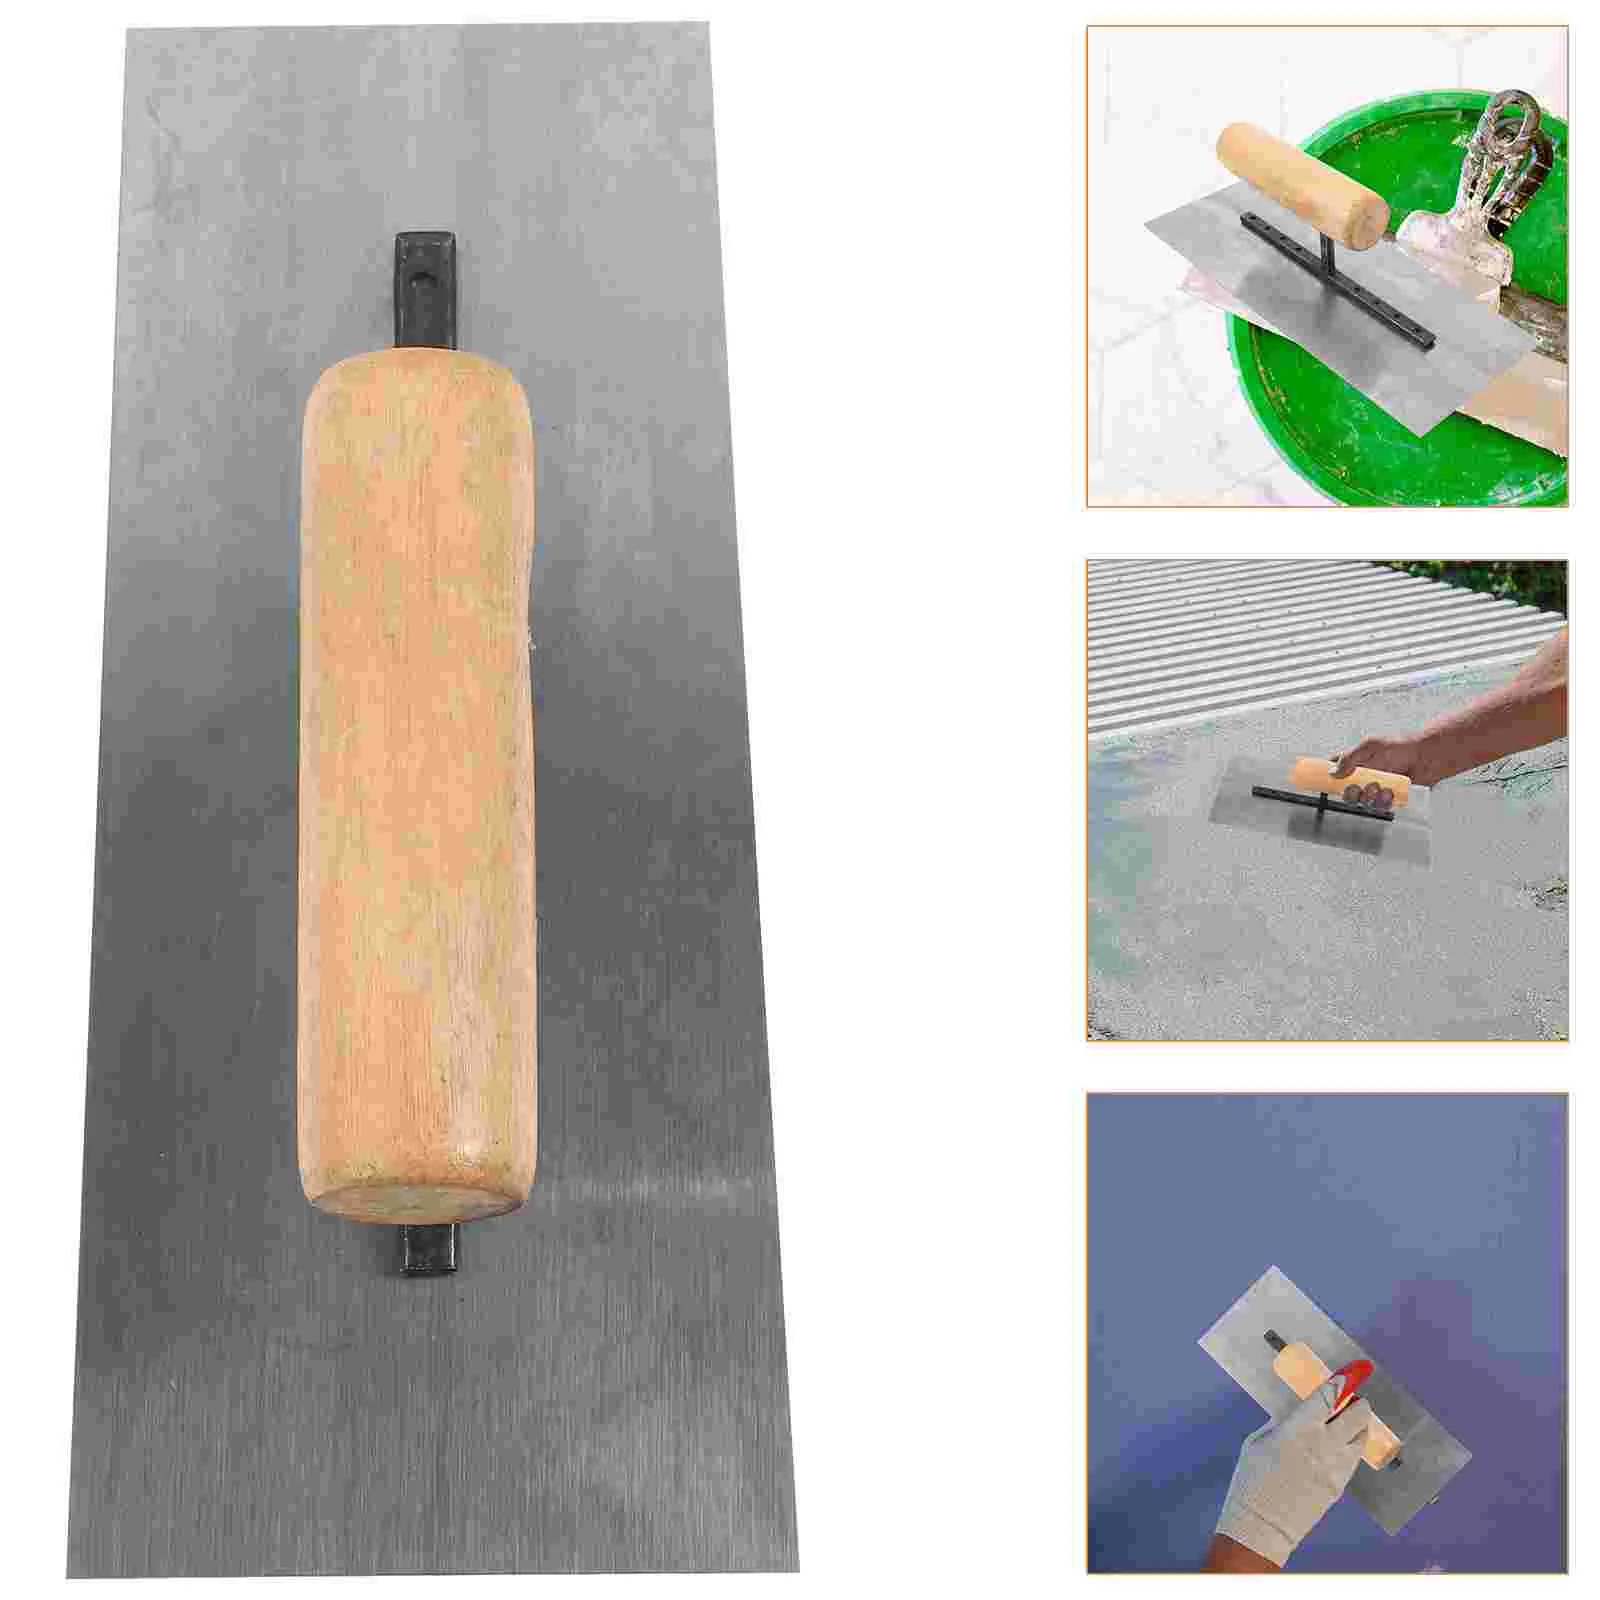 

Шпатель для бетона, ручной садовый шпатель, инструмент для кирпичной кладки, деревянная ручка, цементные инструменты, скребок для гипсокартона